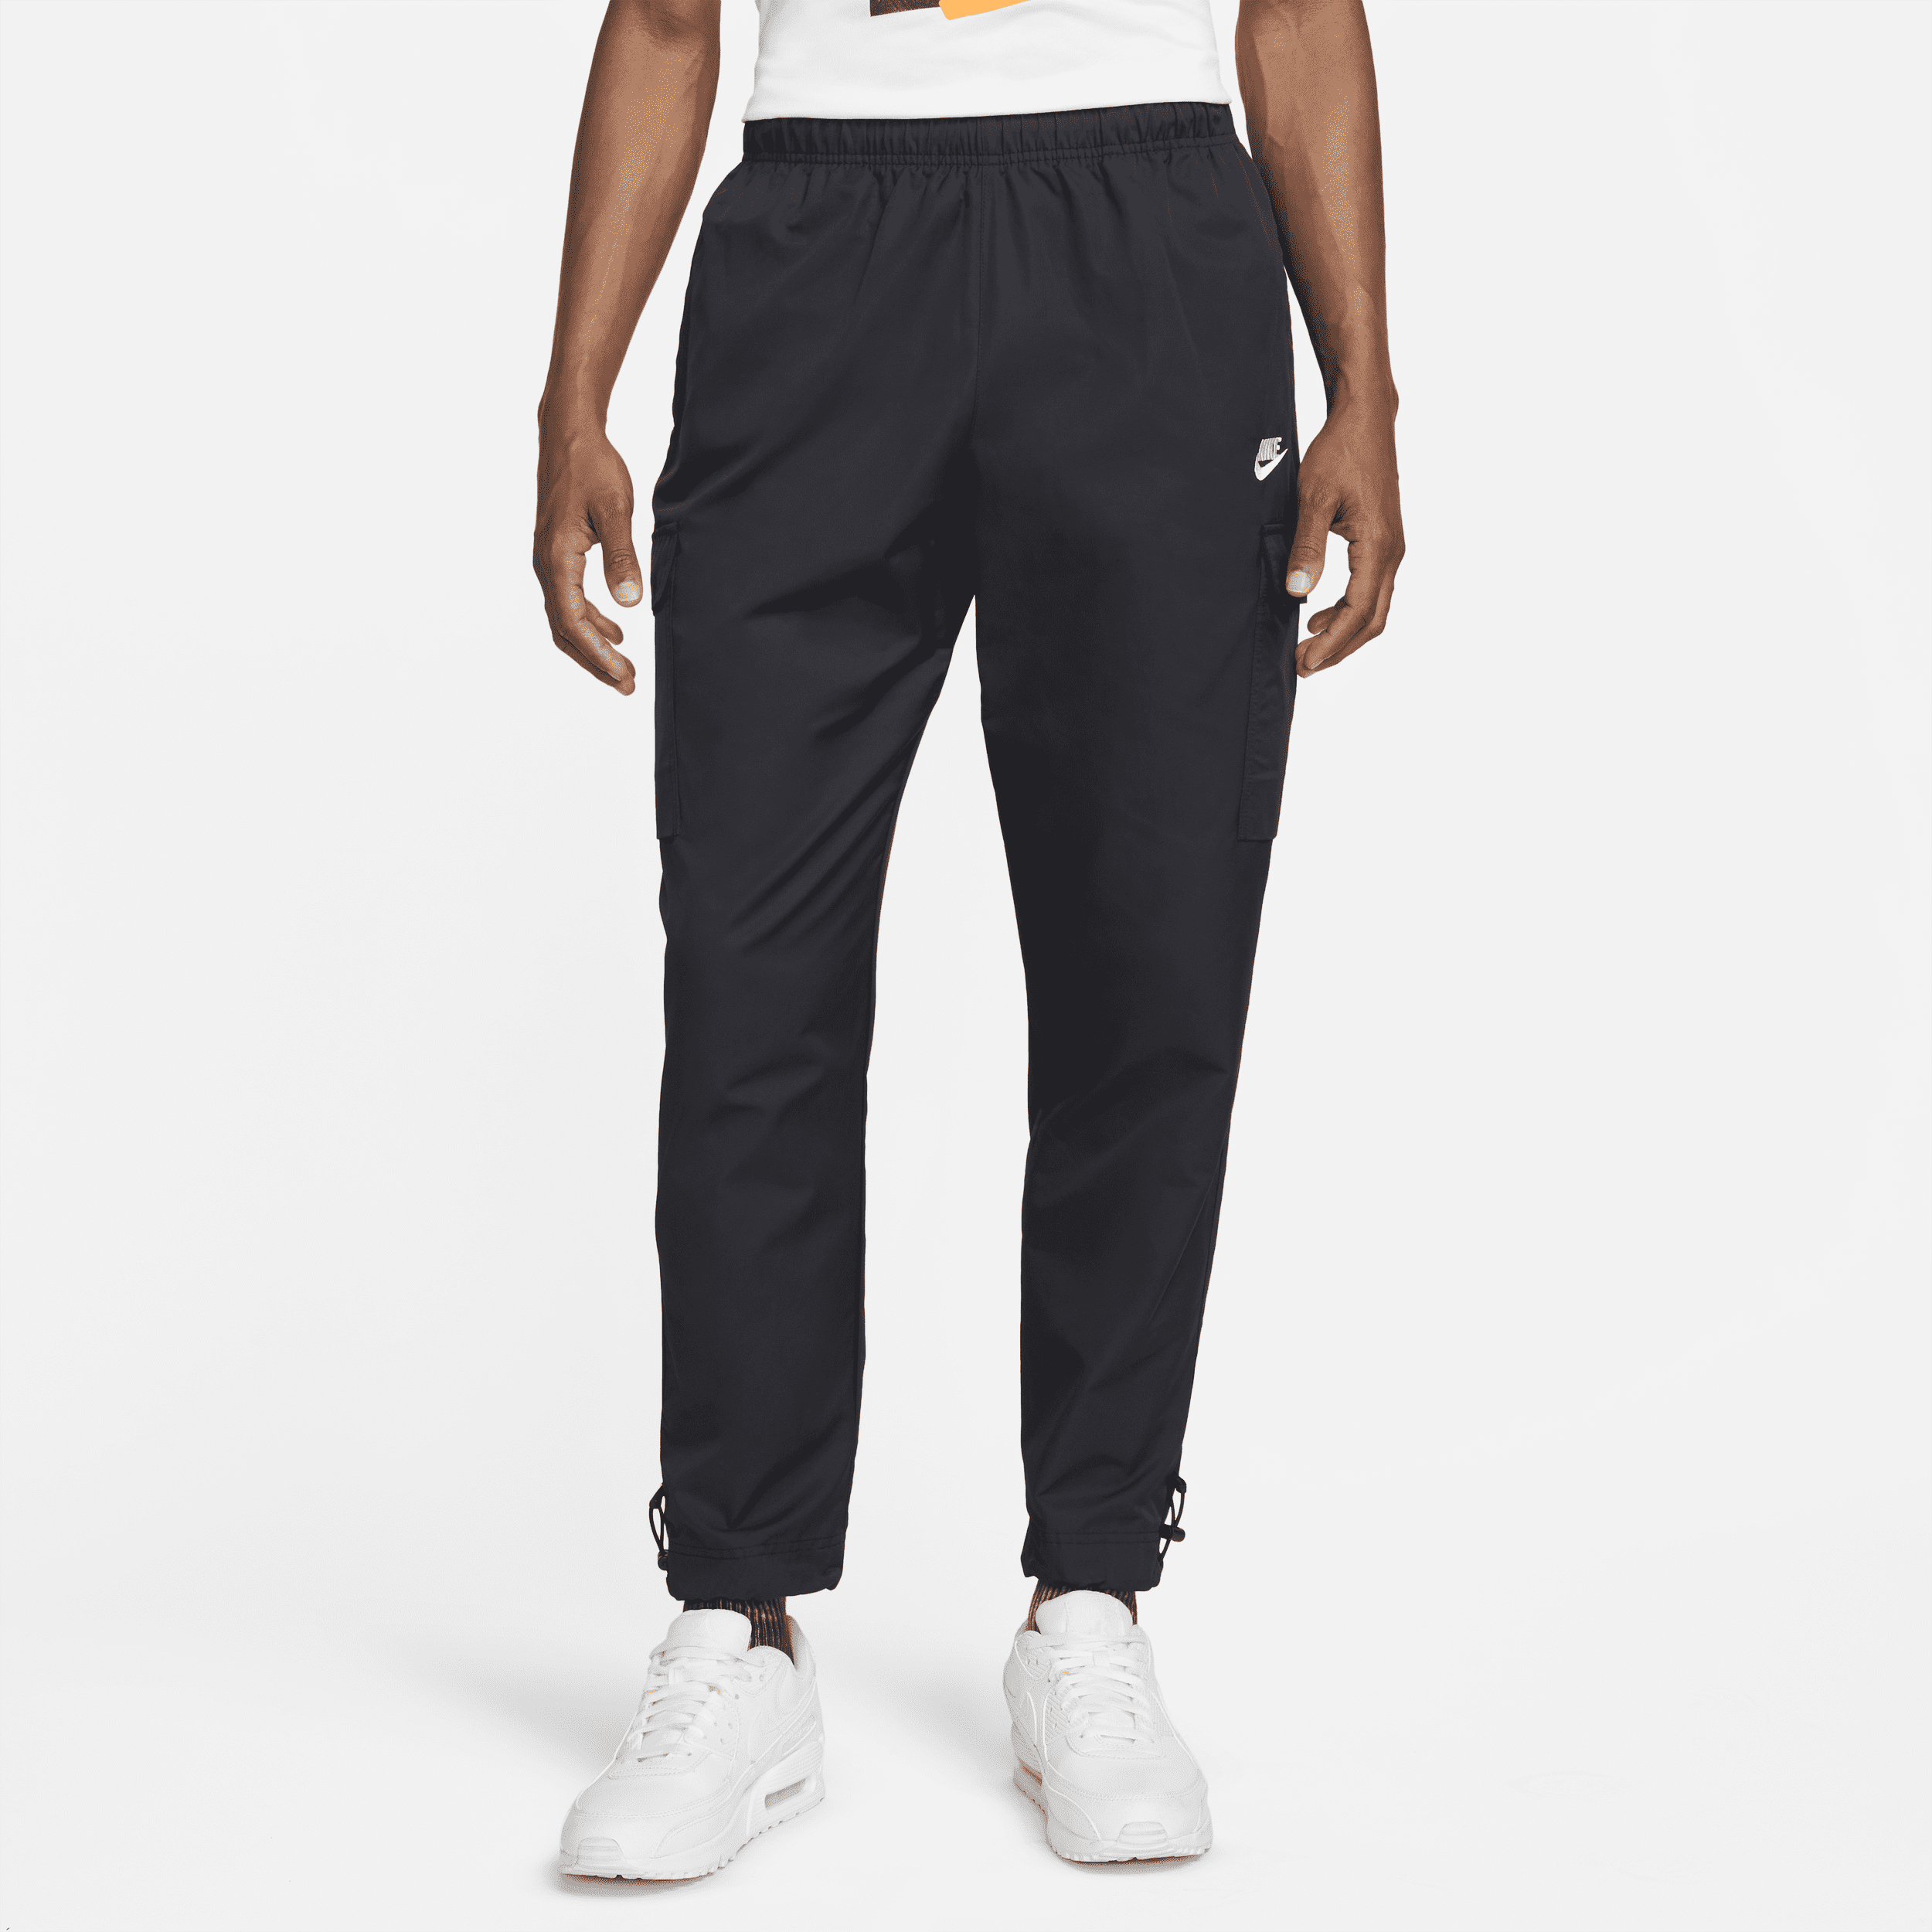 Vævede Nike Sportswear Repeat-bukser til mænd - sort